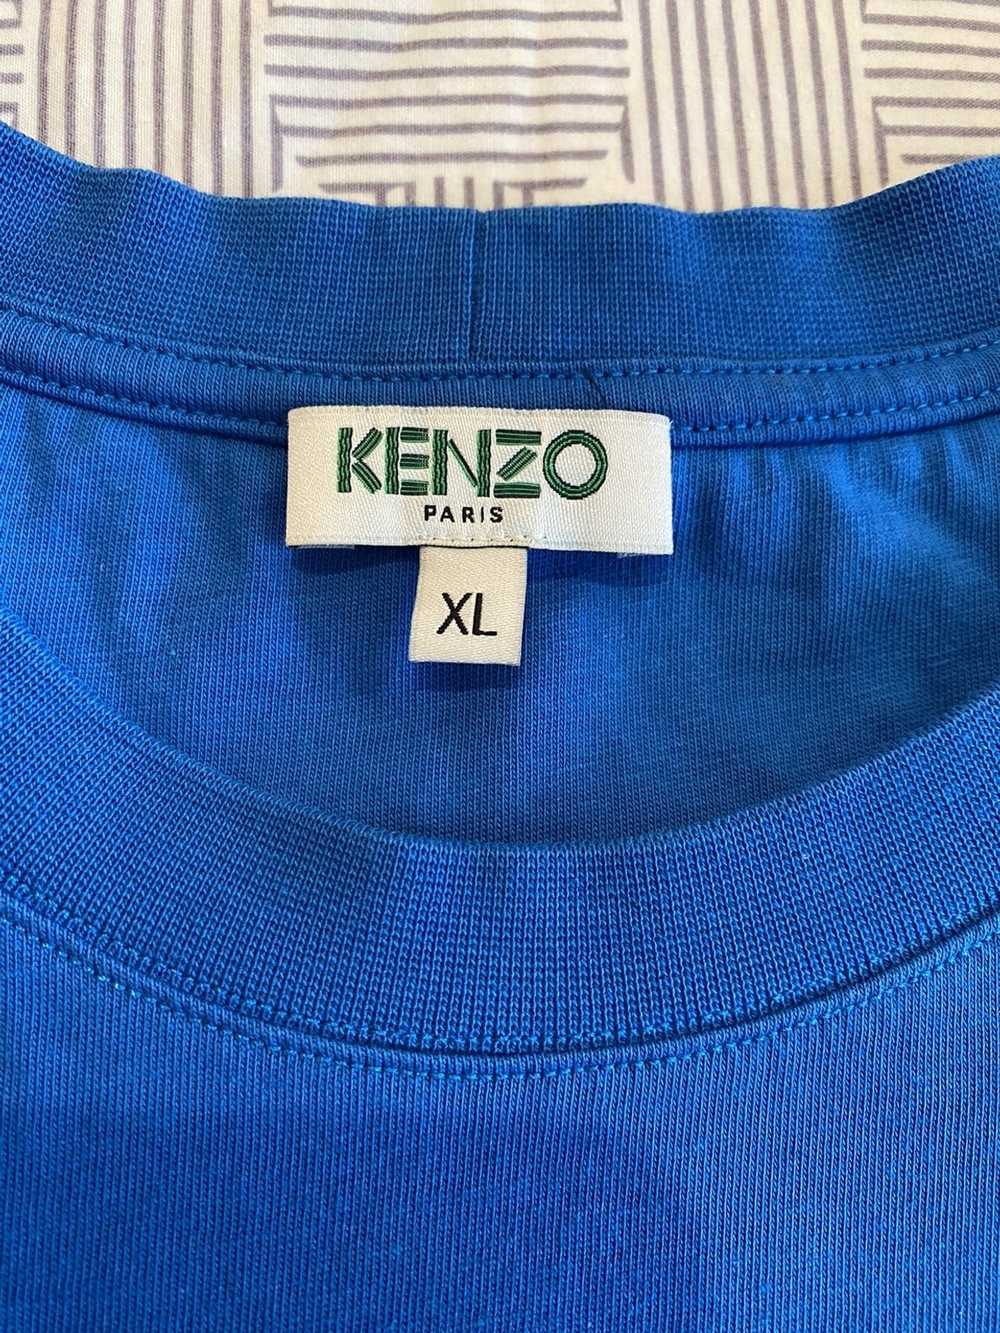 Kenzo Kenzie Paris Tee - Size XL - image 4